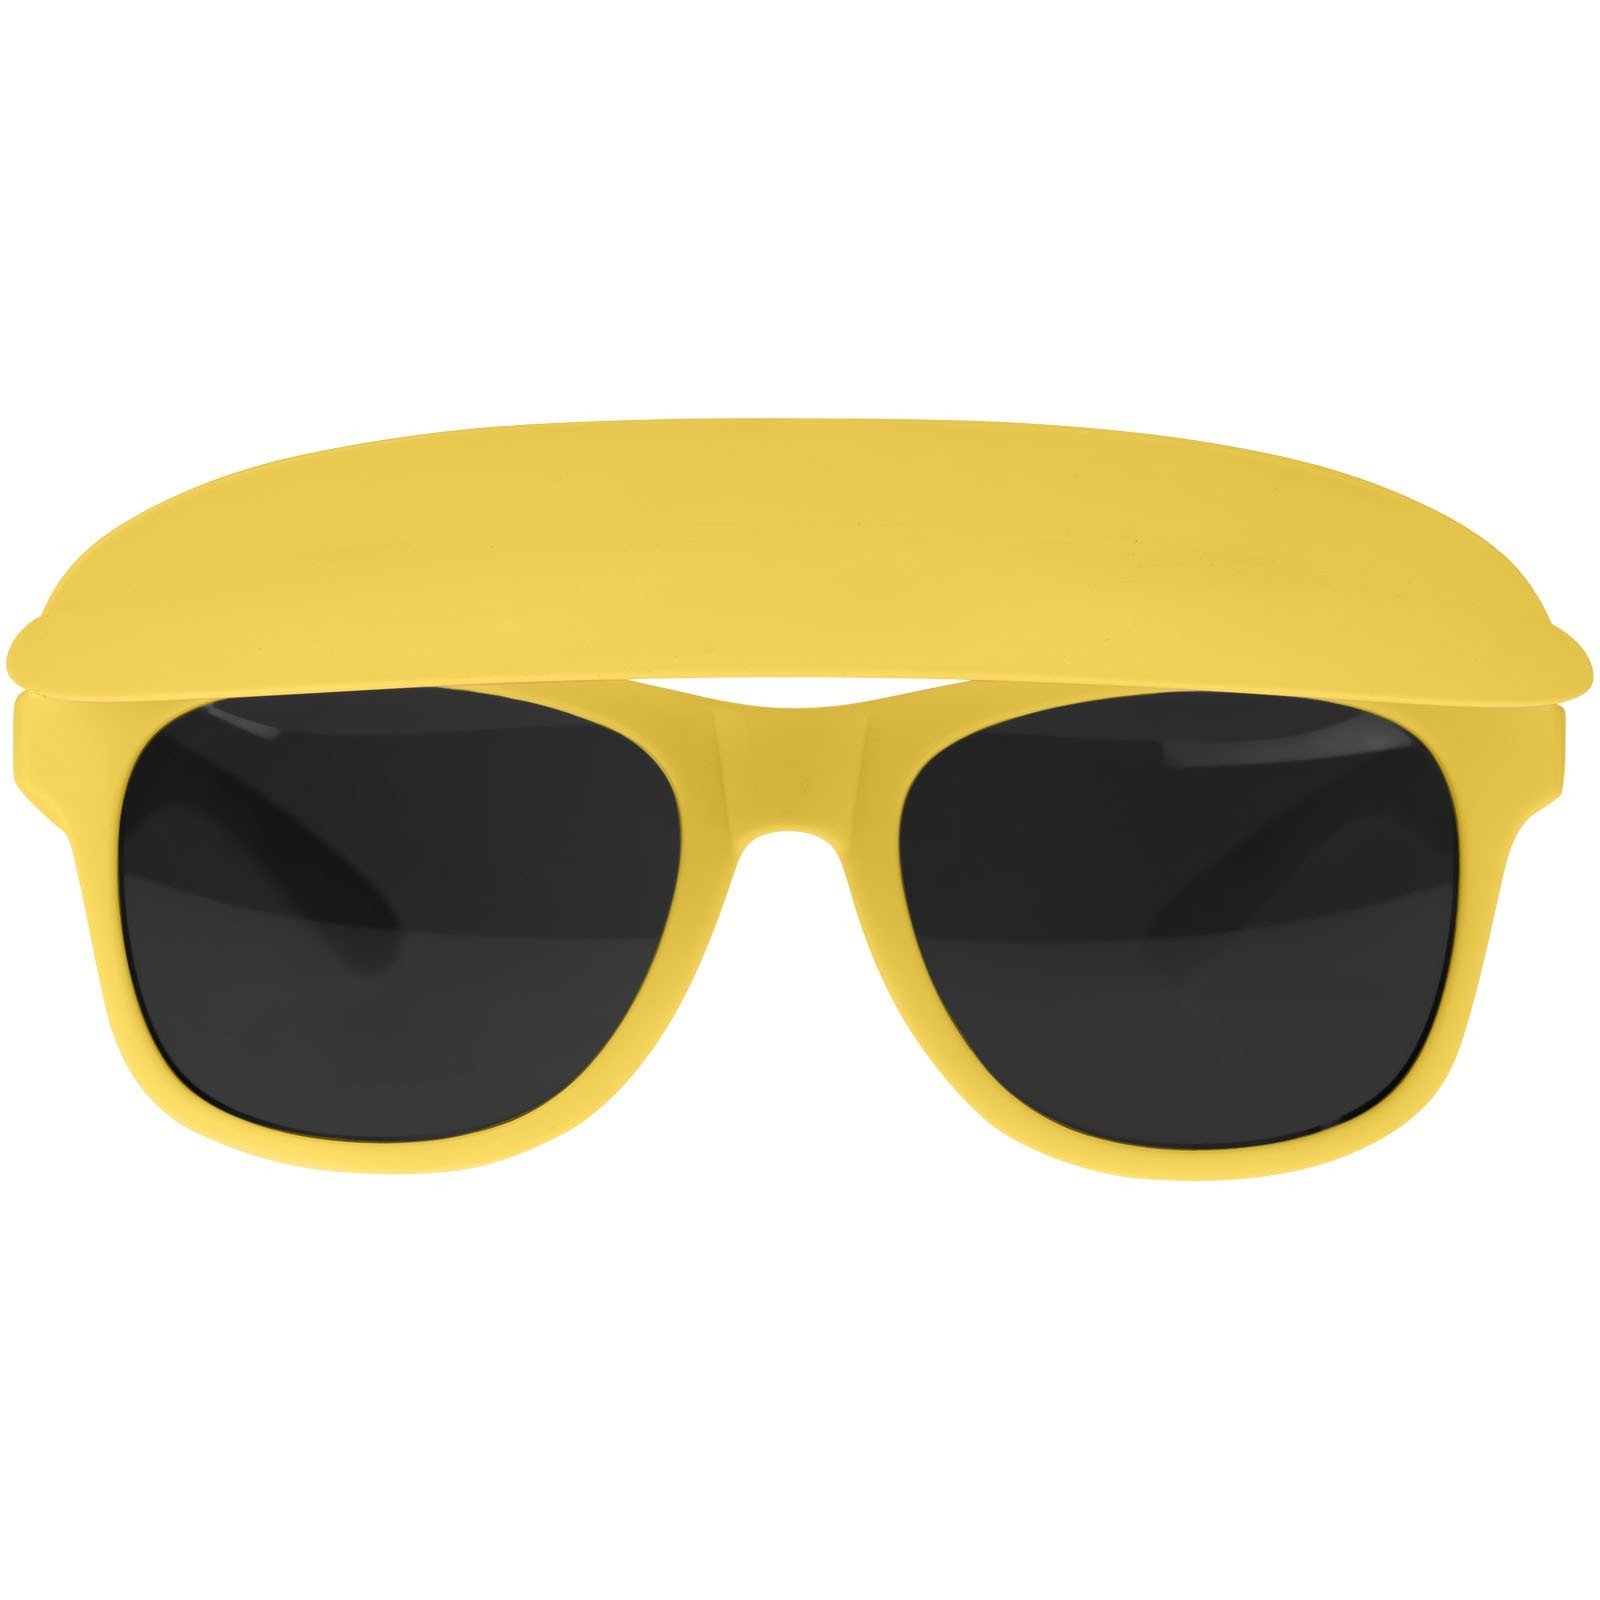 Солнцезащитные очки желтые мужские. Желтые солнцезащитные очки. Солнцезащитные очки в желтой оправе. Желтые солнечные очки мужские. Очки козырек солнцезащитные.